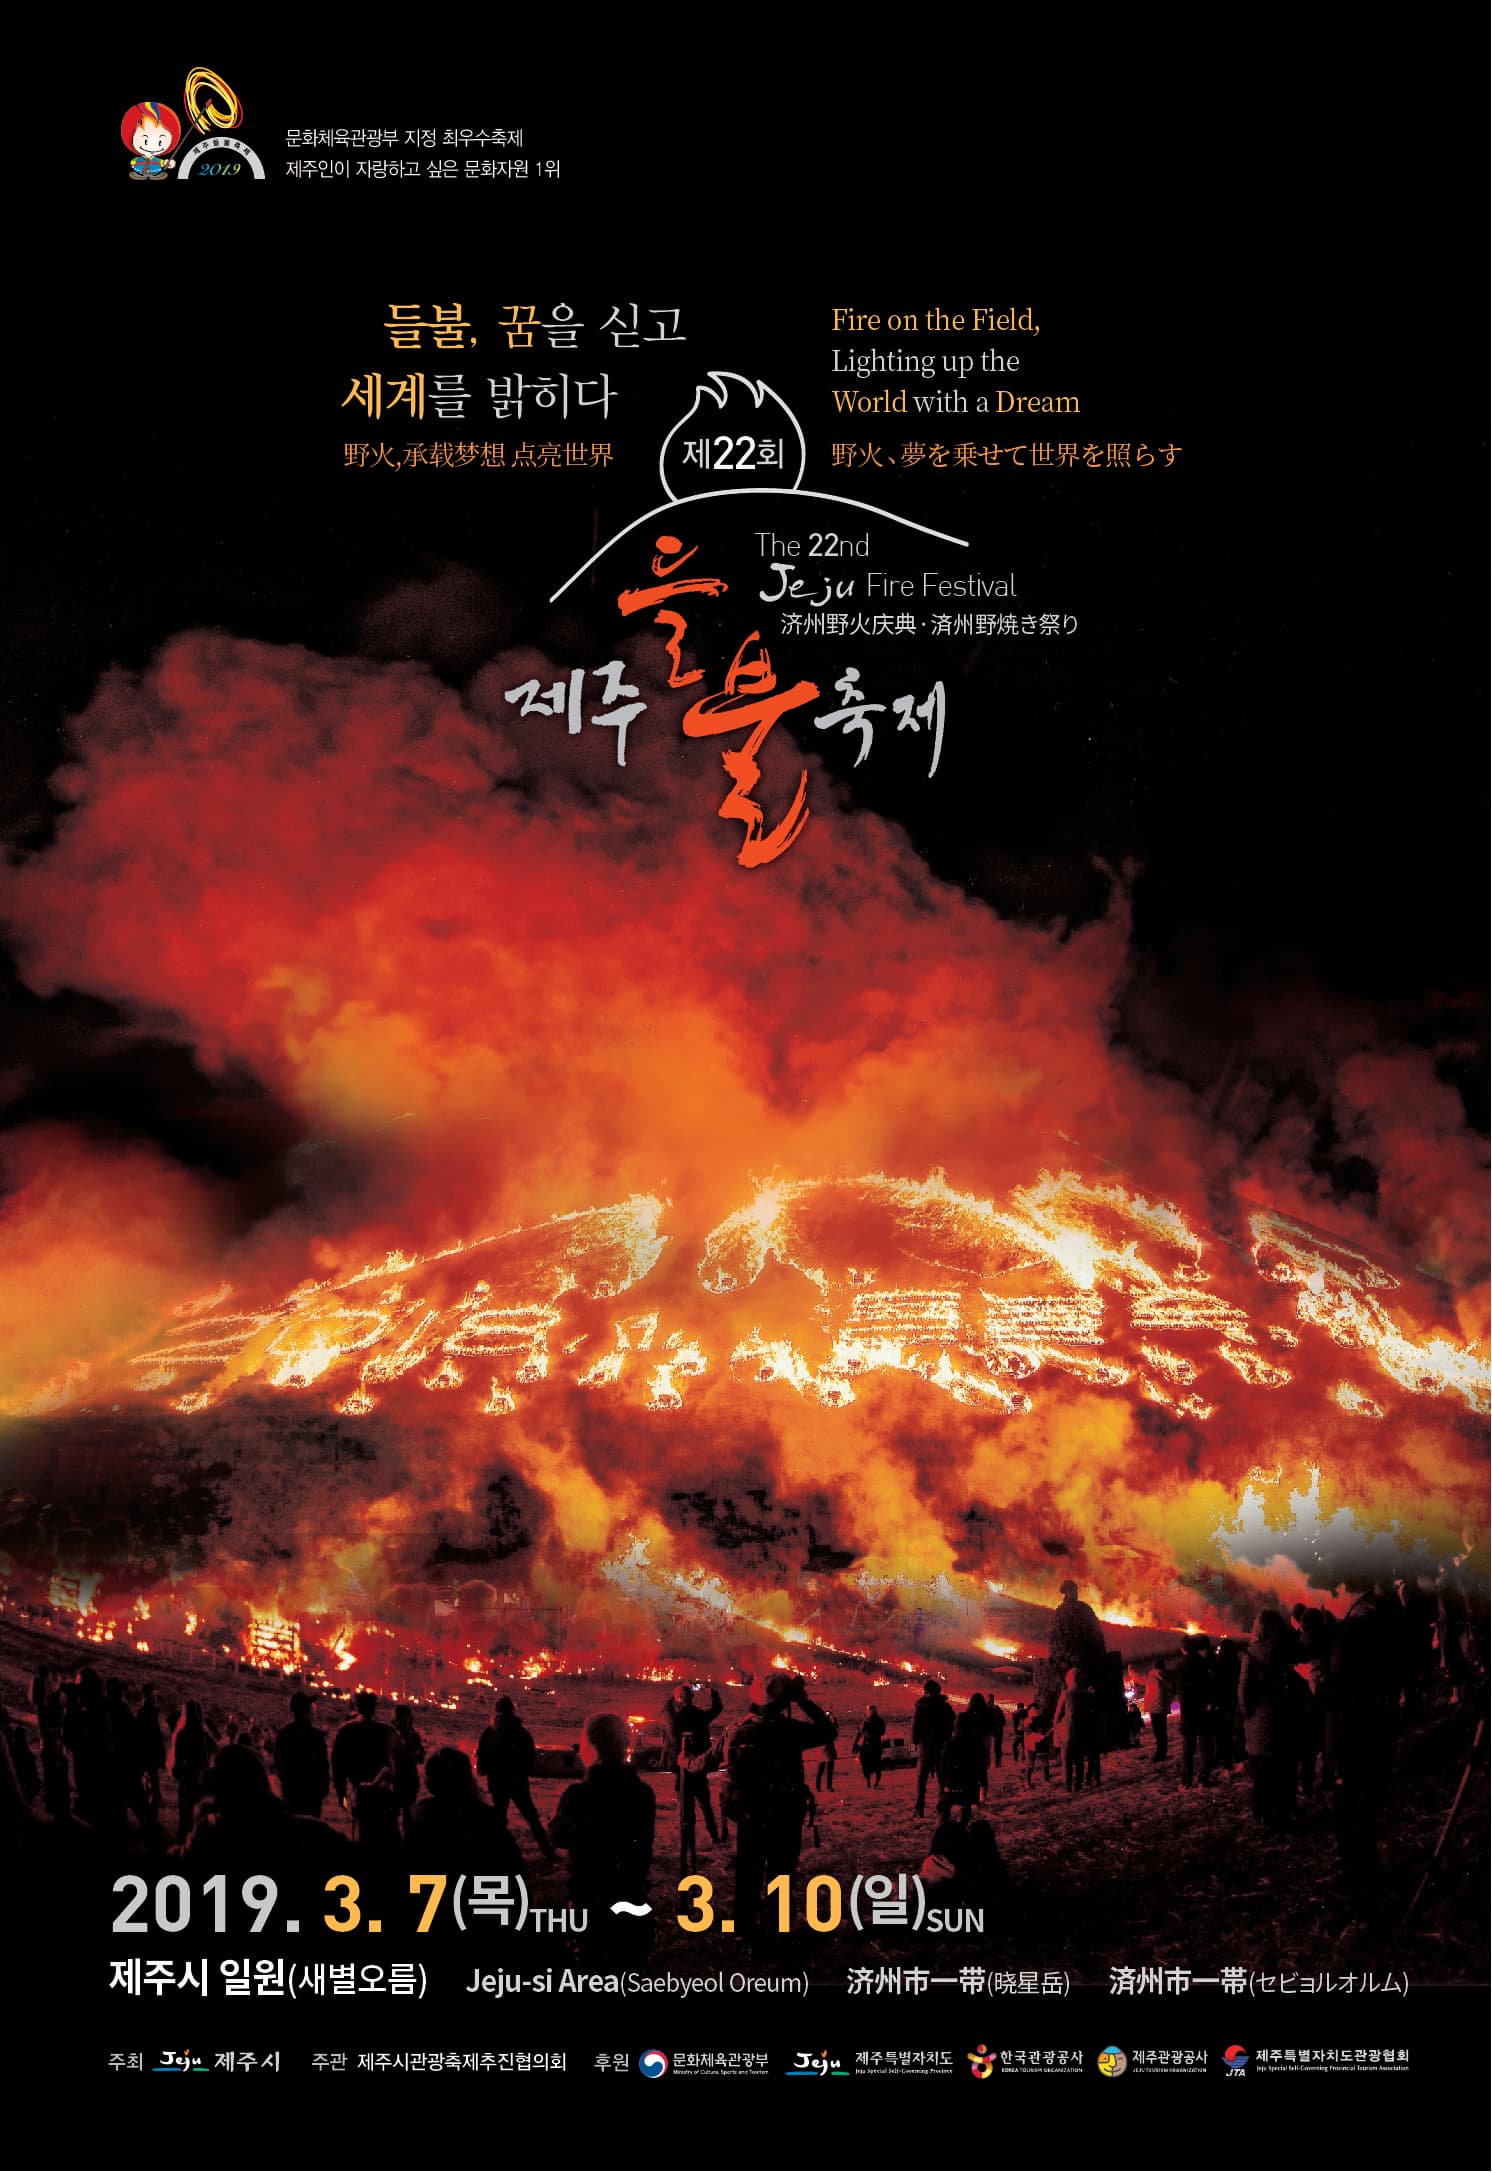  문화체육관광부 지정 최우수축제 제주인이 자랑하고 싶은 문화자원 1위   들불, 꿈을 싣고 세계를 밝히다 Fire on the Field, Lighting up the  World with a Dream  The 22nd Jeju Fire Festival  제 22회 제주 들불축제  2019. 3. 7(목) ~ 3. 10(일)  제주시 일원(새별오름) Jeju-si Area(Saebyeol Oreum)   주최 제주시 주관 제주시관광축제추진협의회  후원 문화체육관광부 제주특별자치도 한국관광공사 제주관광공사 제주특별자치도관광협회   